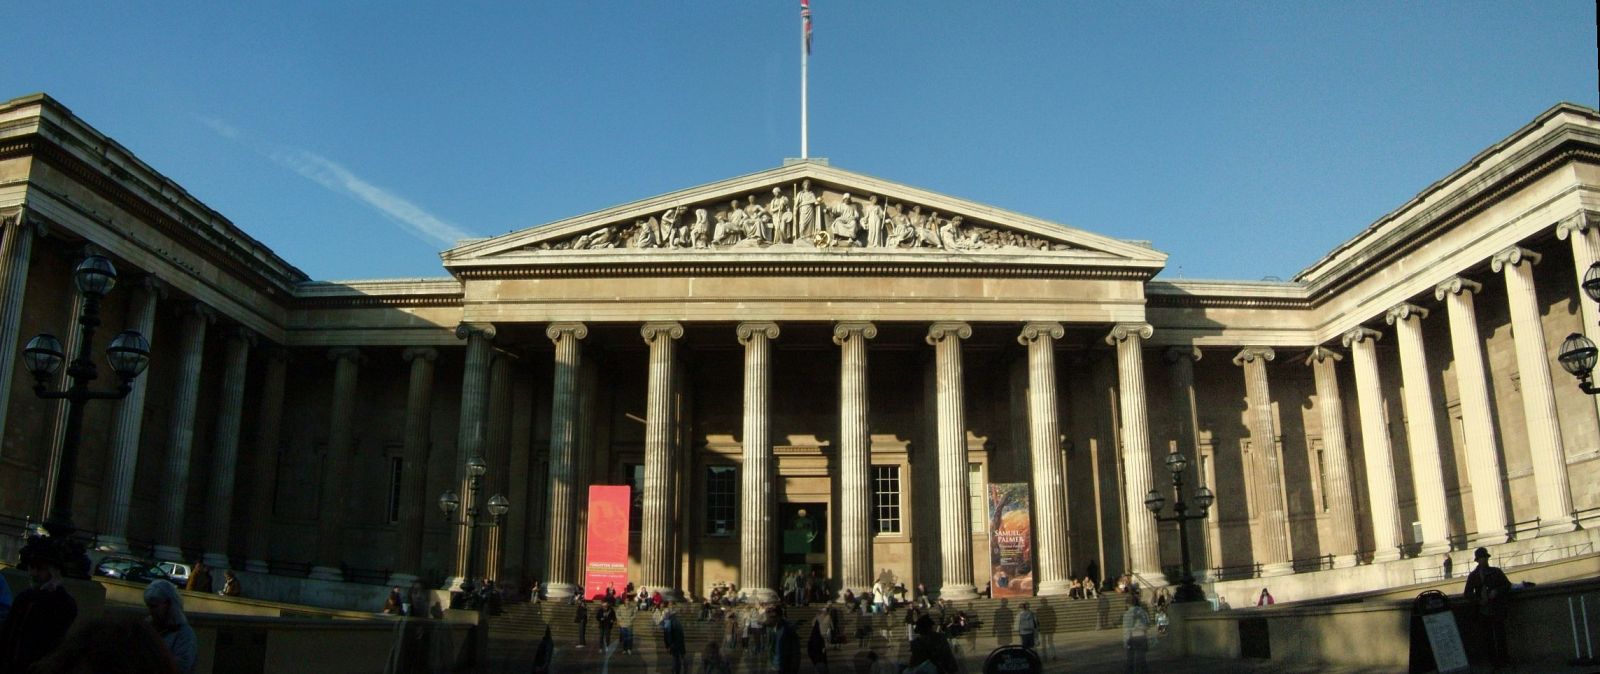 El Museo Británico de Londres es el segundo más visitado del mundo, sólo por detrás del Louvre.